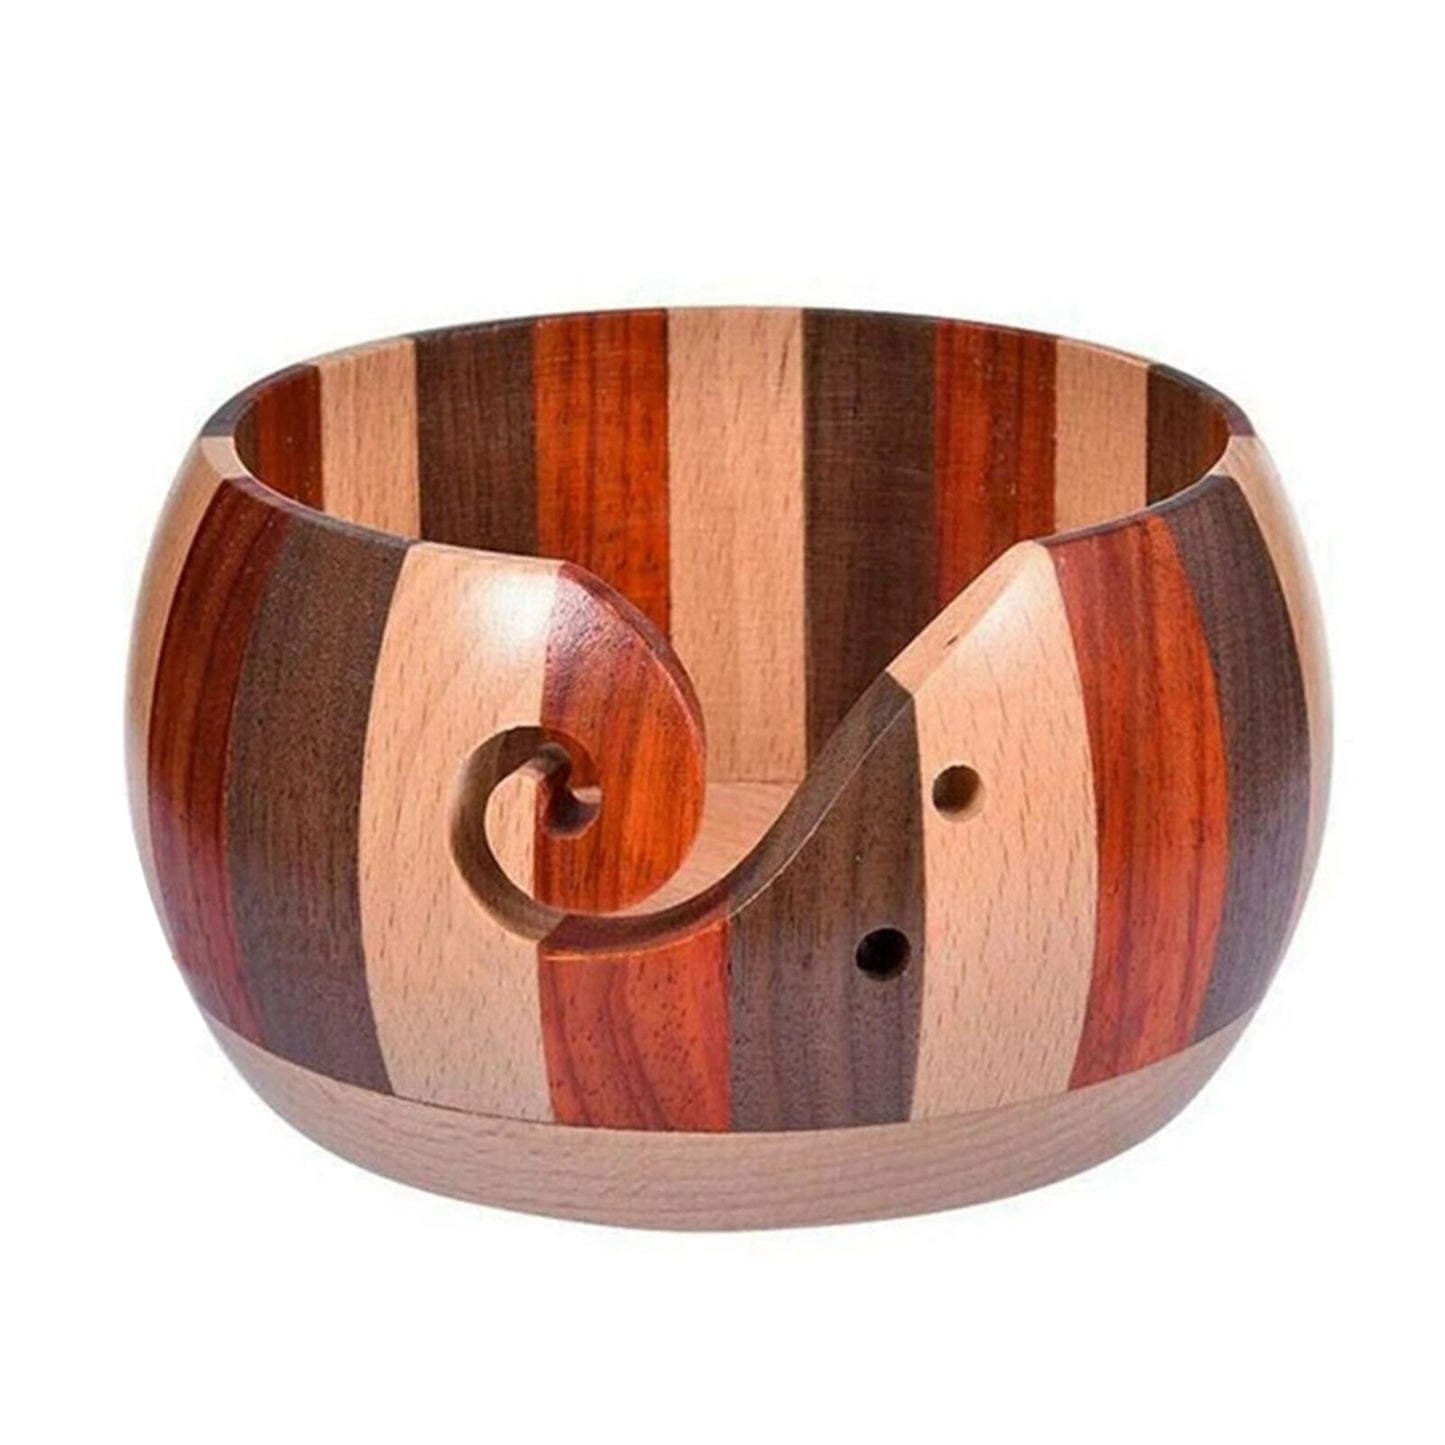 Wooden Yarn Bowl - Annie Potter's Yarn Basket